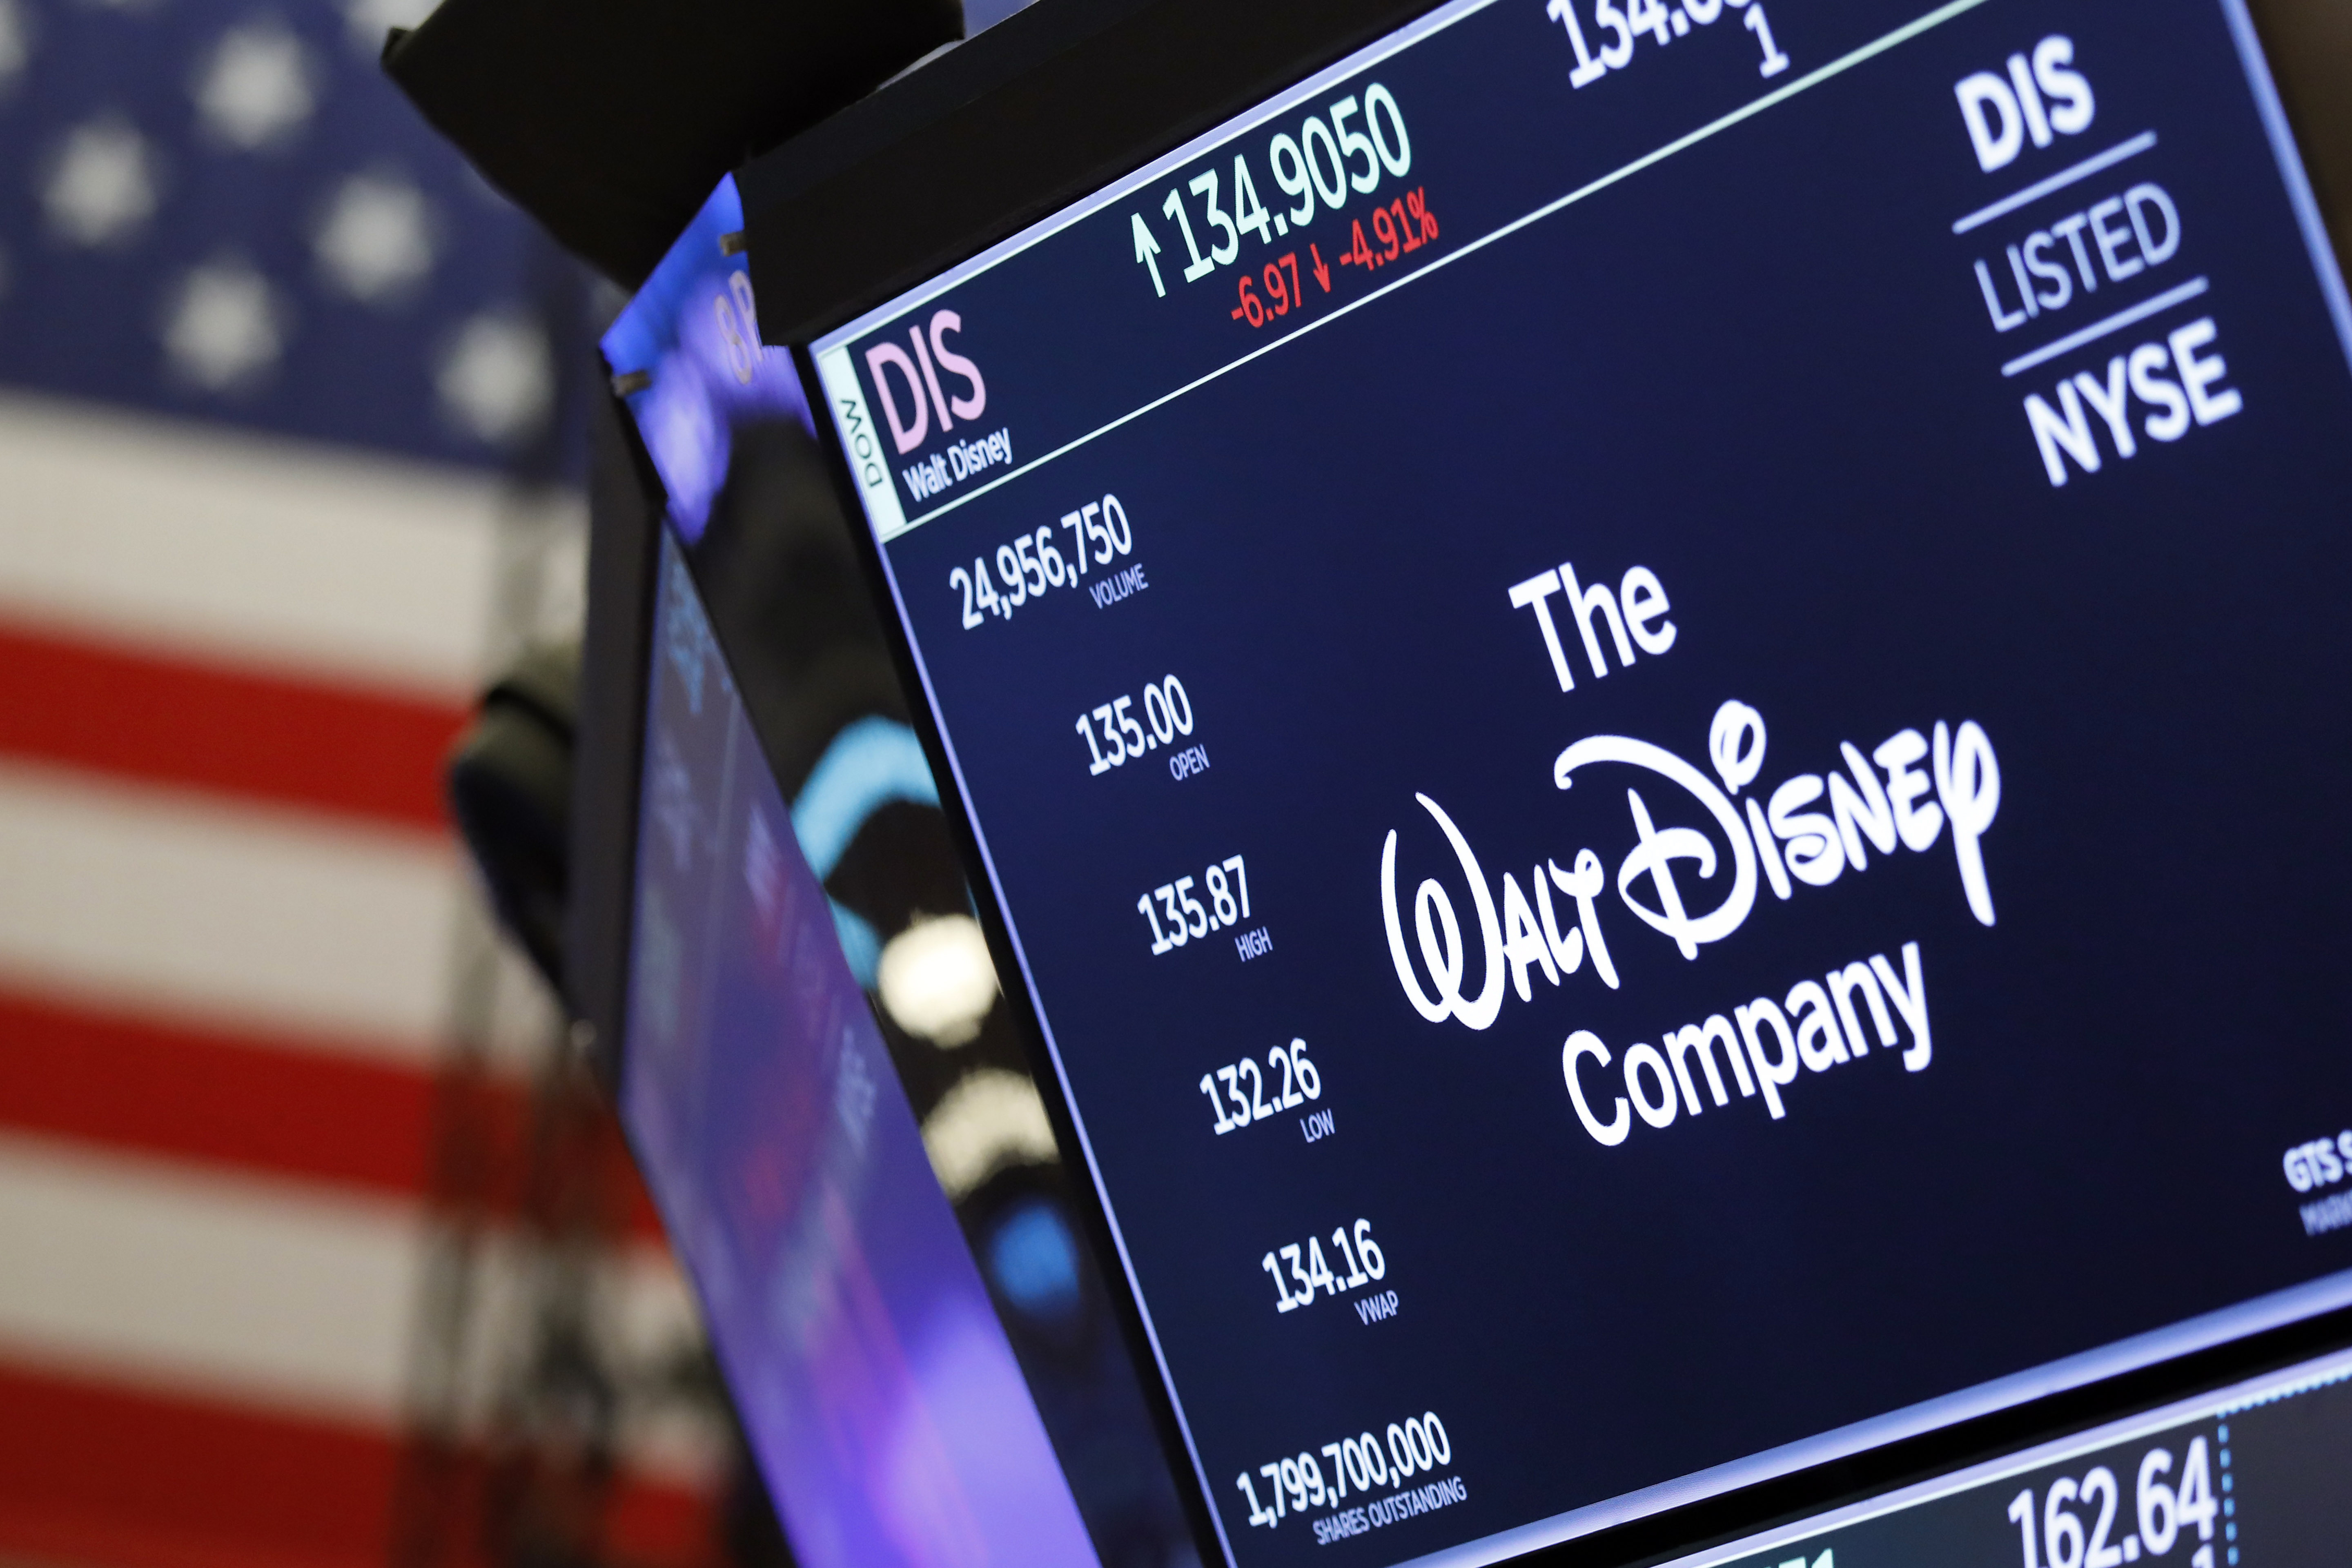 Con su plataforma que ofrece películas y series originales, Disney+ busca hacerle competencia a Netflix. (AP/Richard Drew)